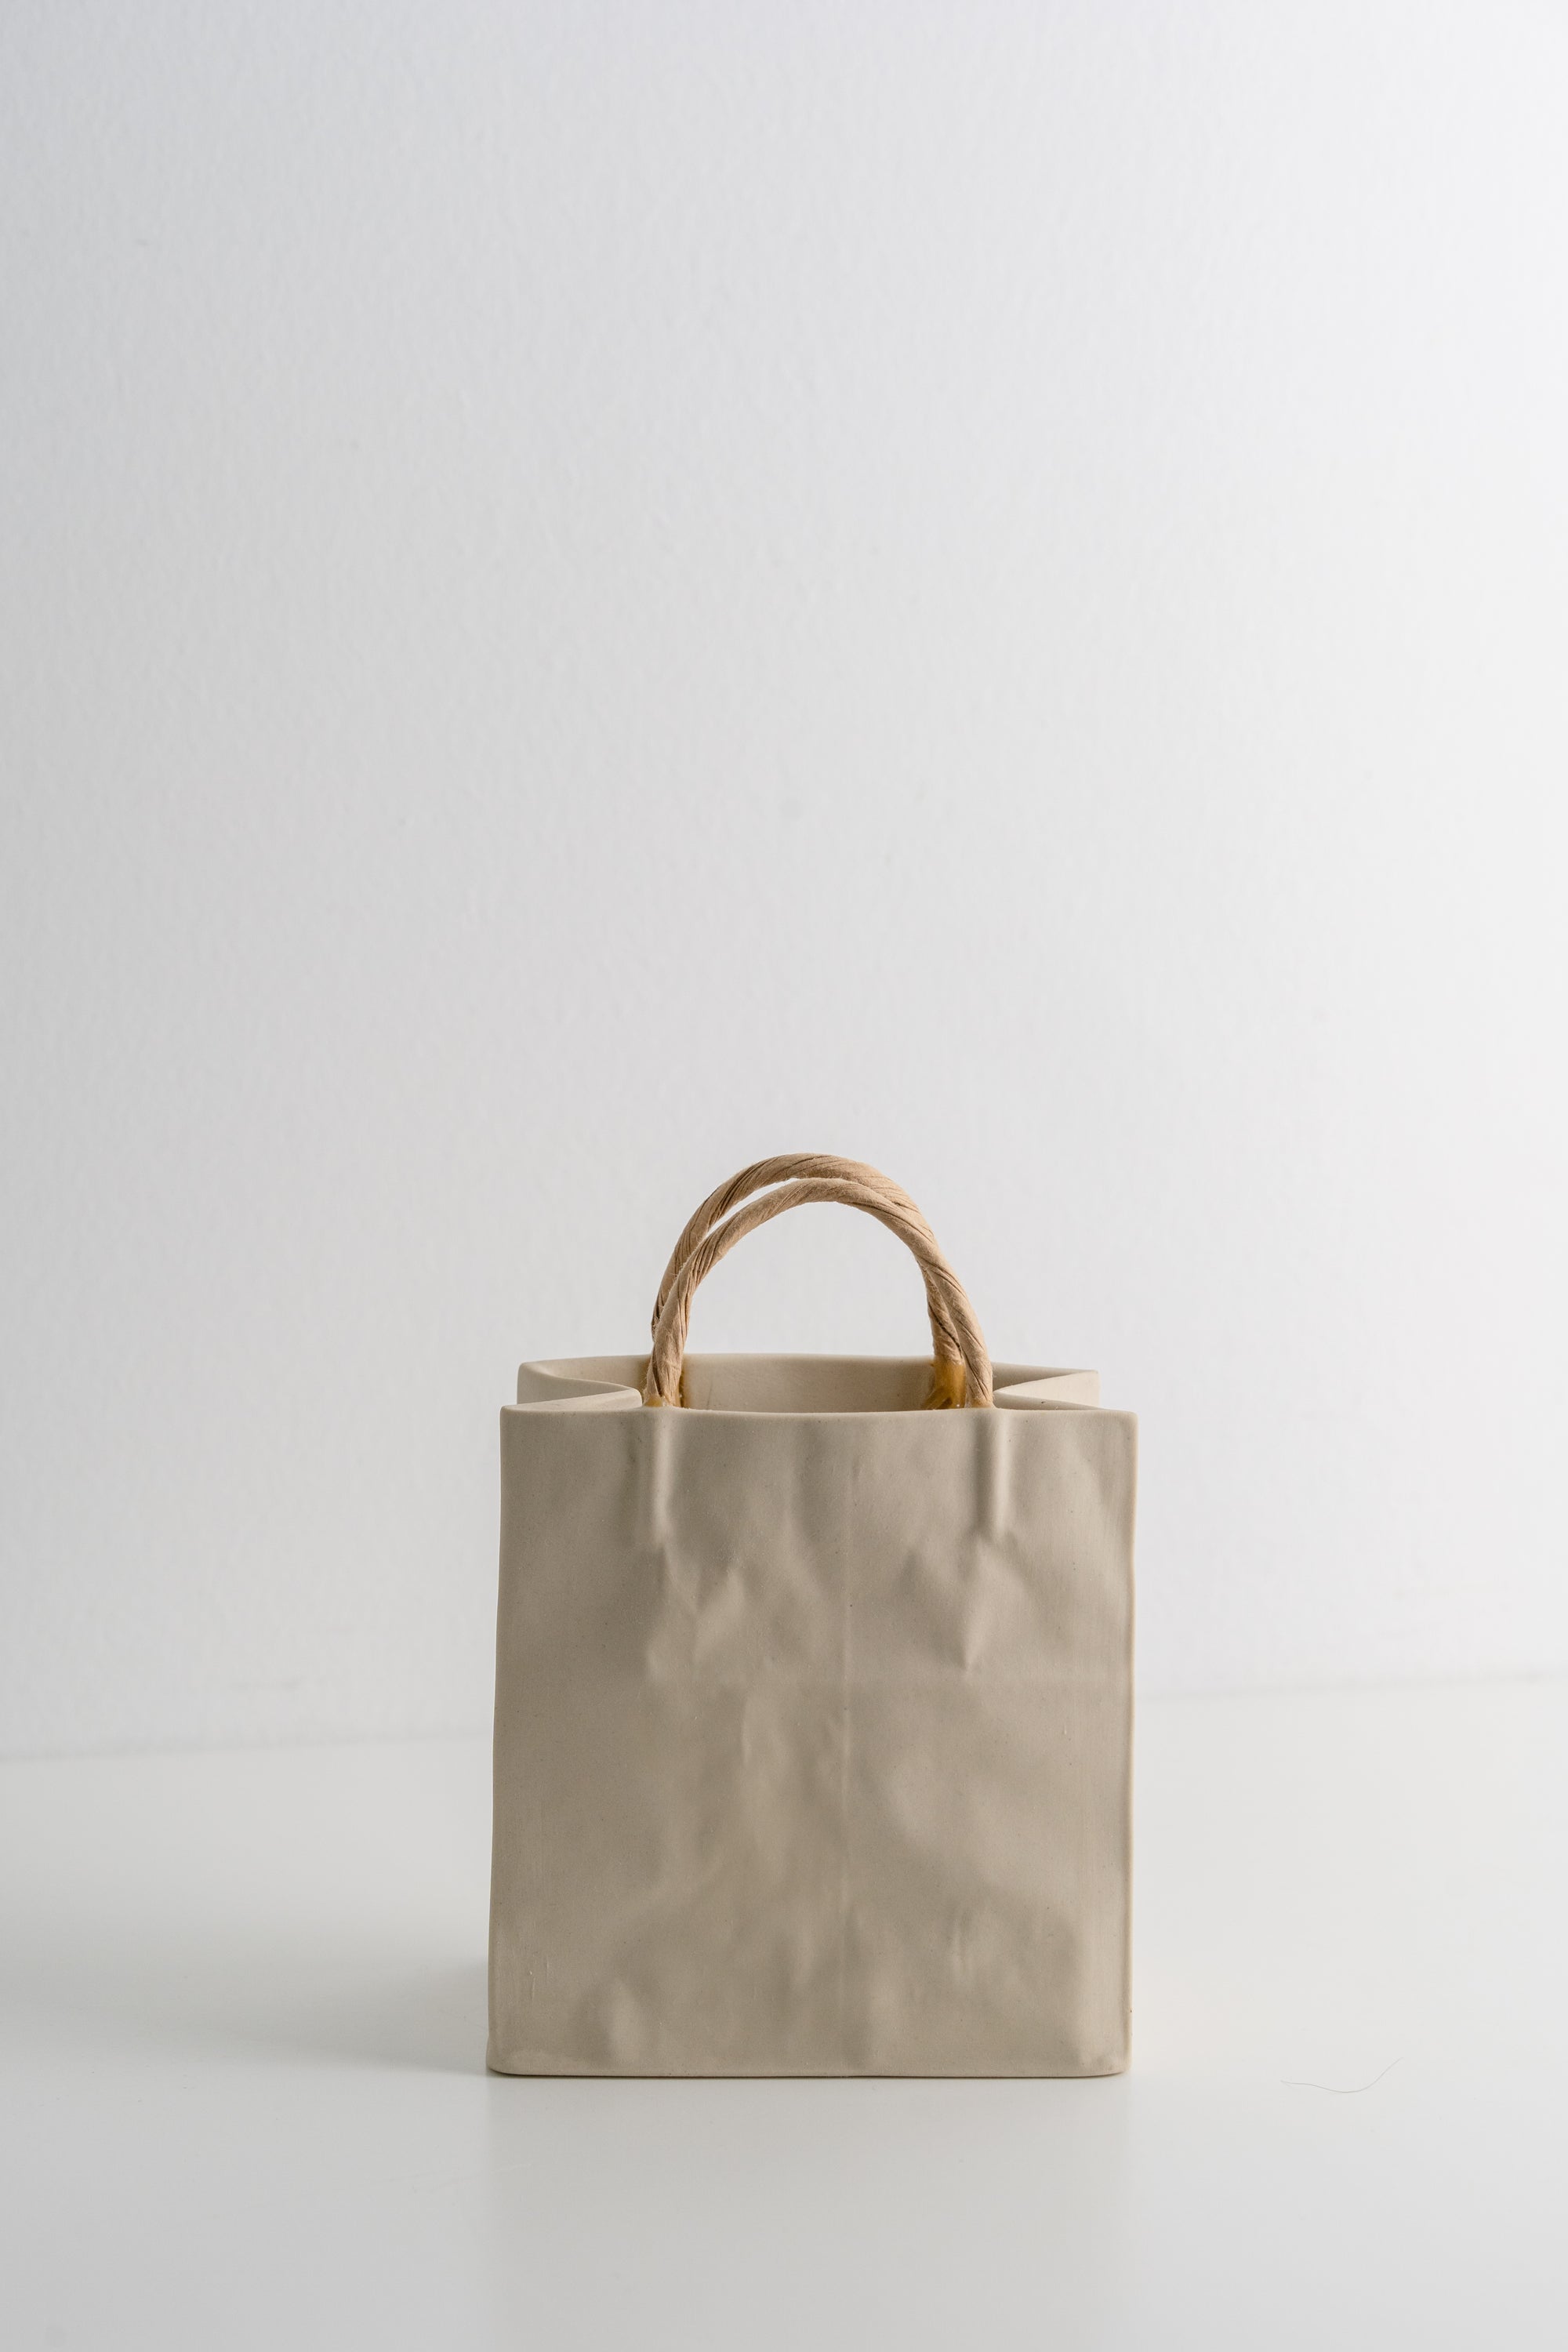 Michael Harvey Ceramic Gift Bag